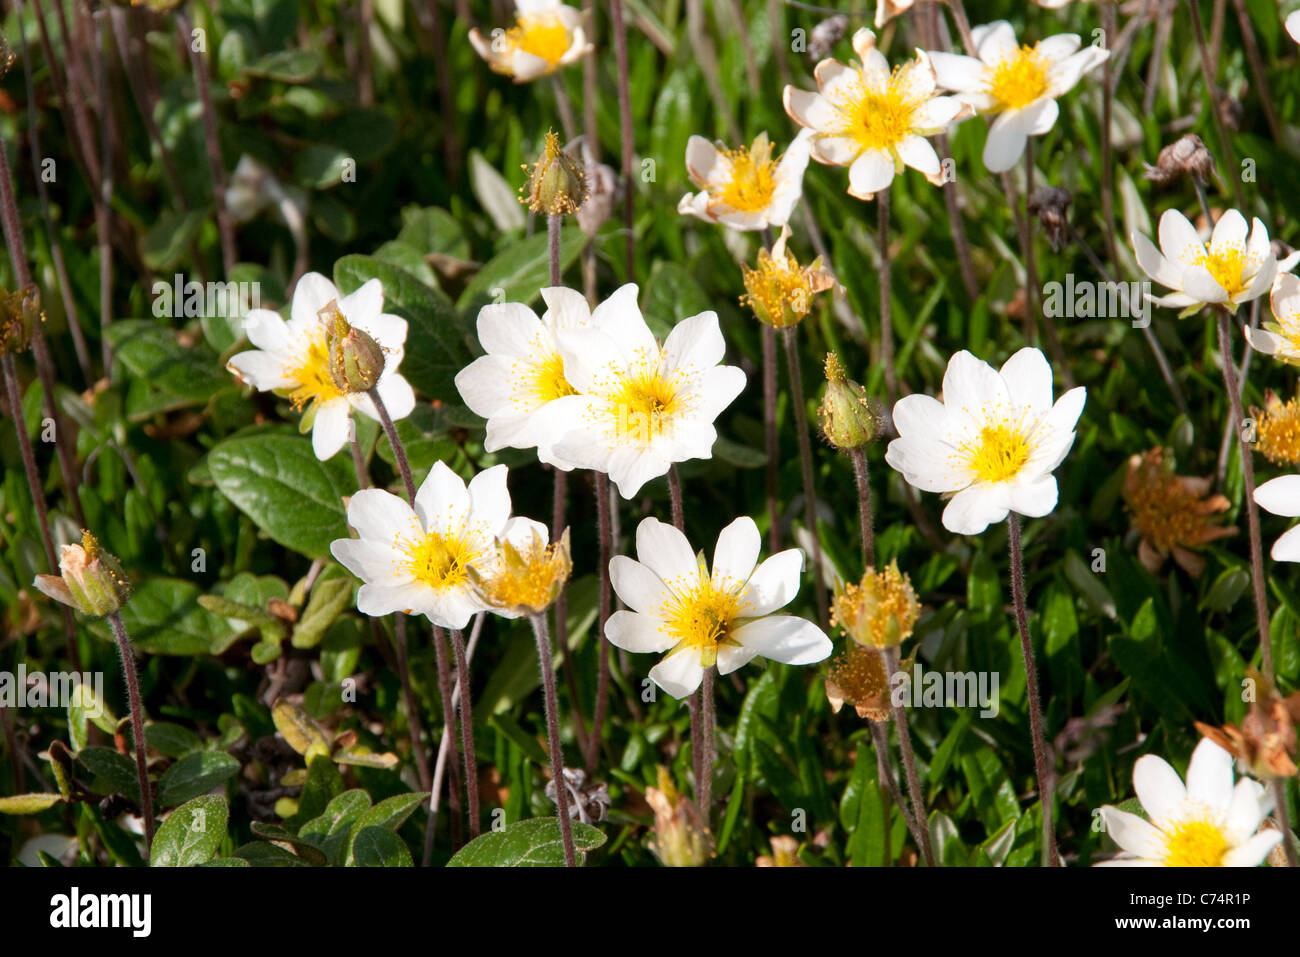 Arktische Dryade, auch bekannt als "weiße Avens" oder "weiße Drayas", in voller Blüte im Sommer in der Tundra der nördlichen Manitoba, Kanada. Stockfoto